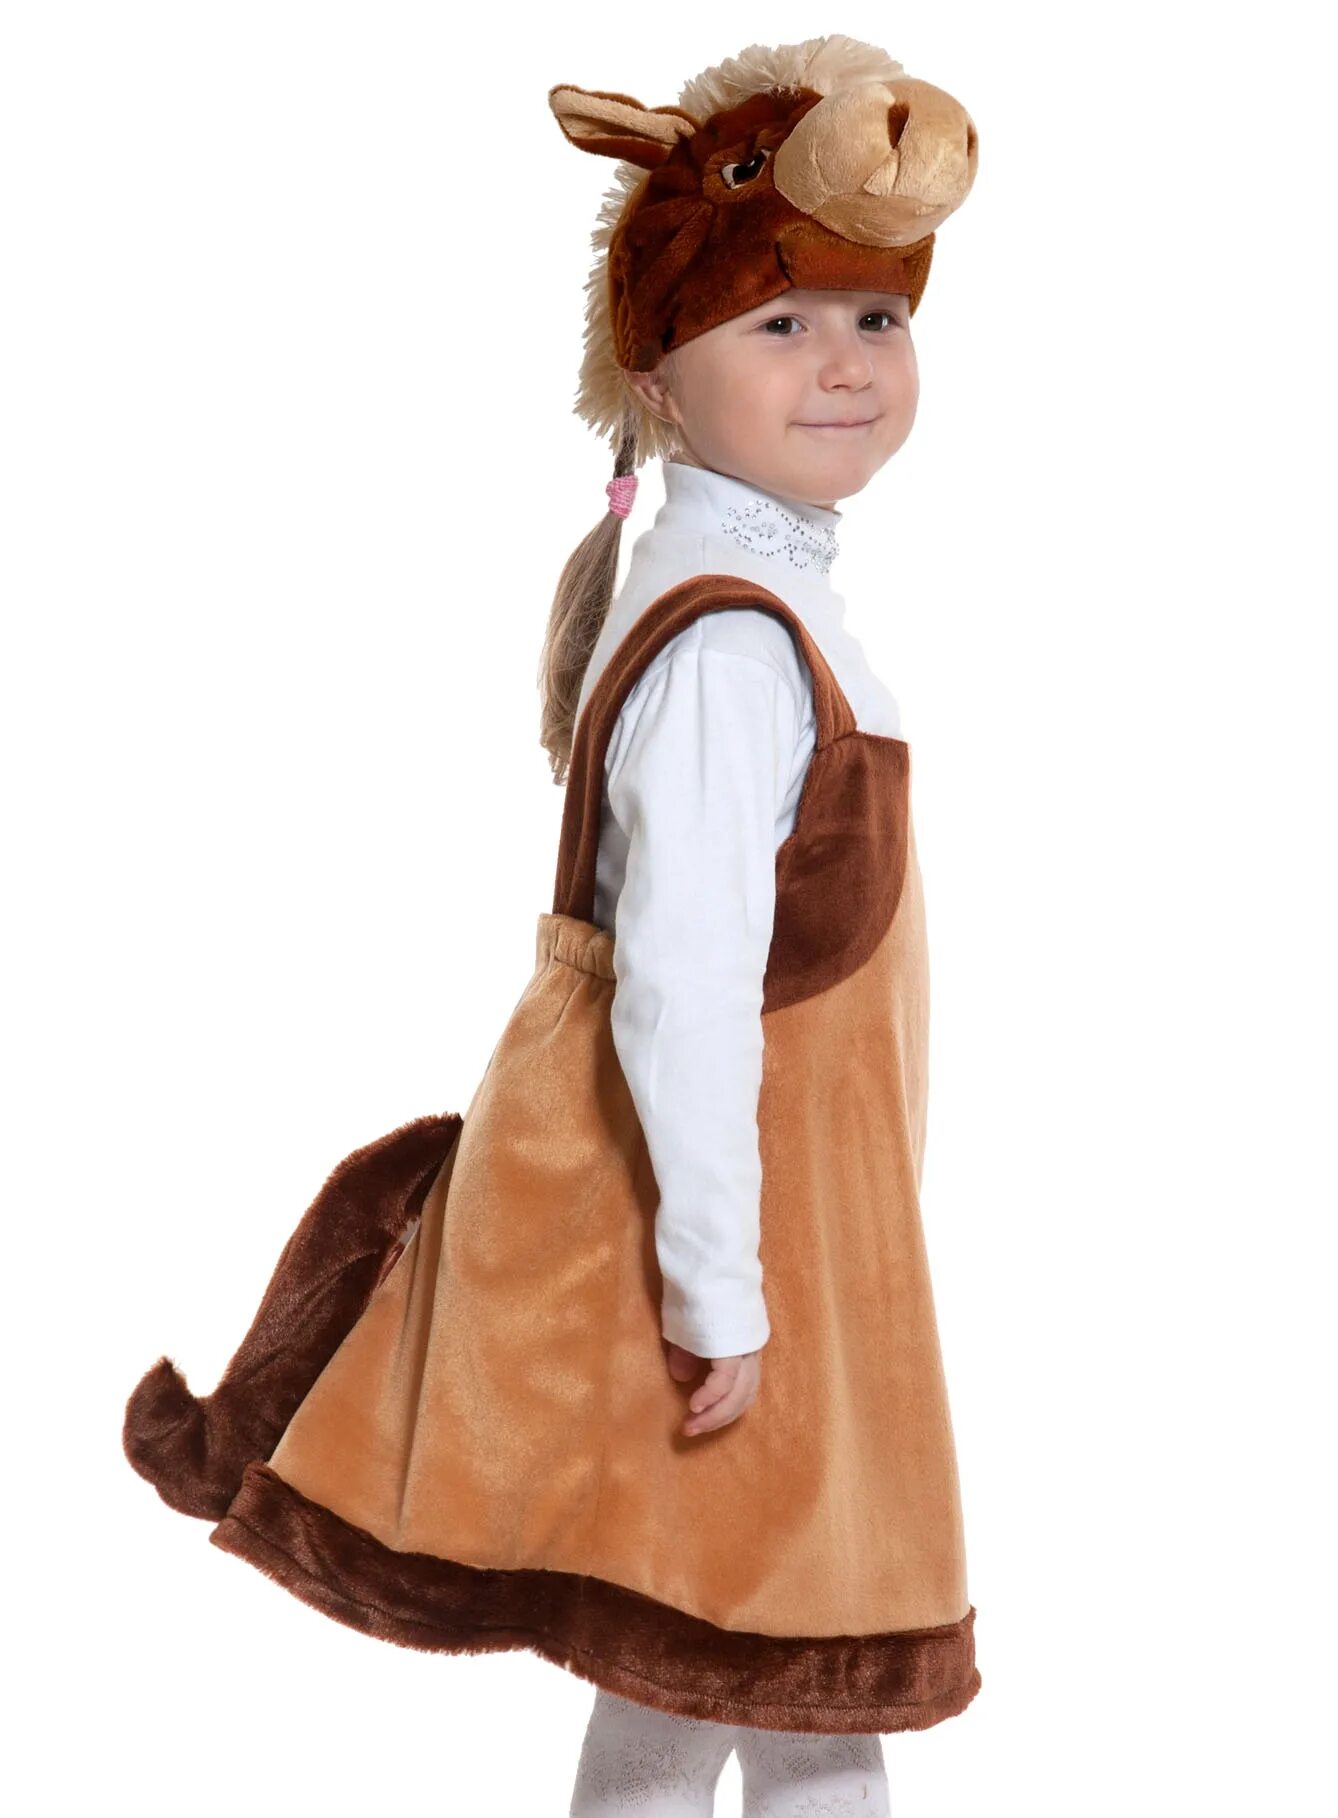 Карнавальный костюм Карнавалофф собачка. Костюм лошадки для девочки. Костюм лошади для детей.